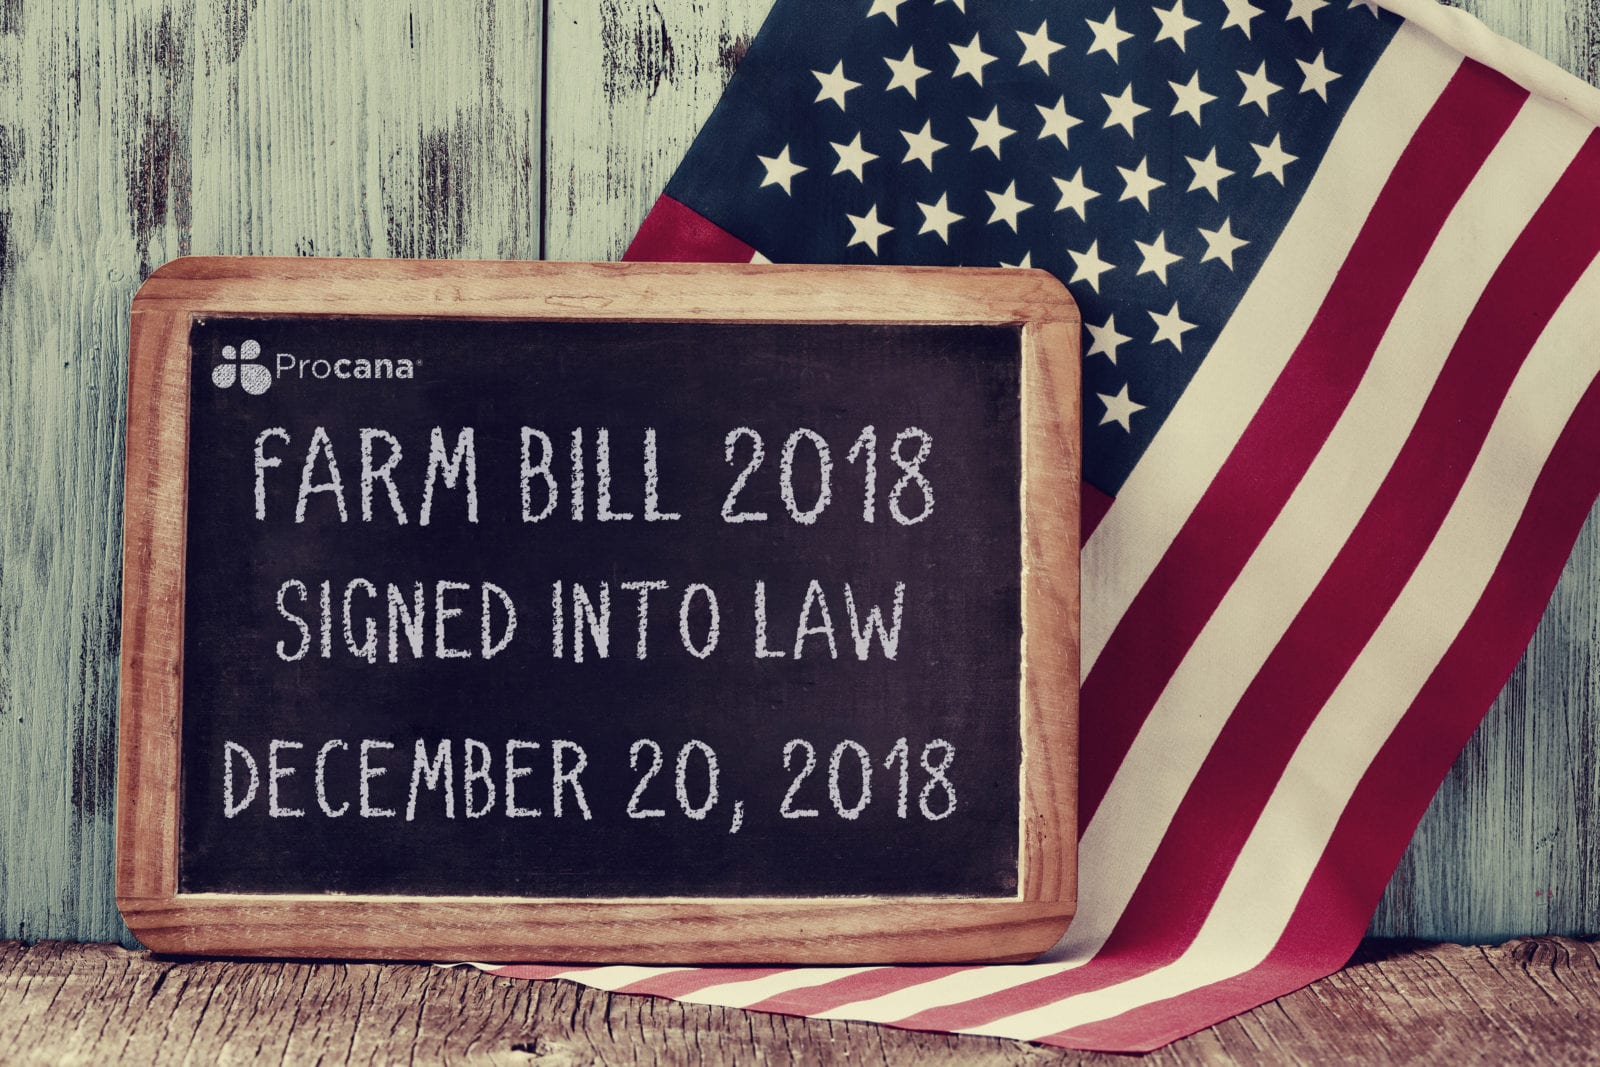 Farm Bill 2018 - Procana